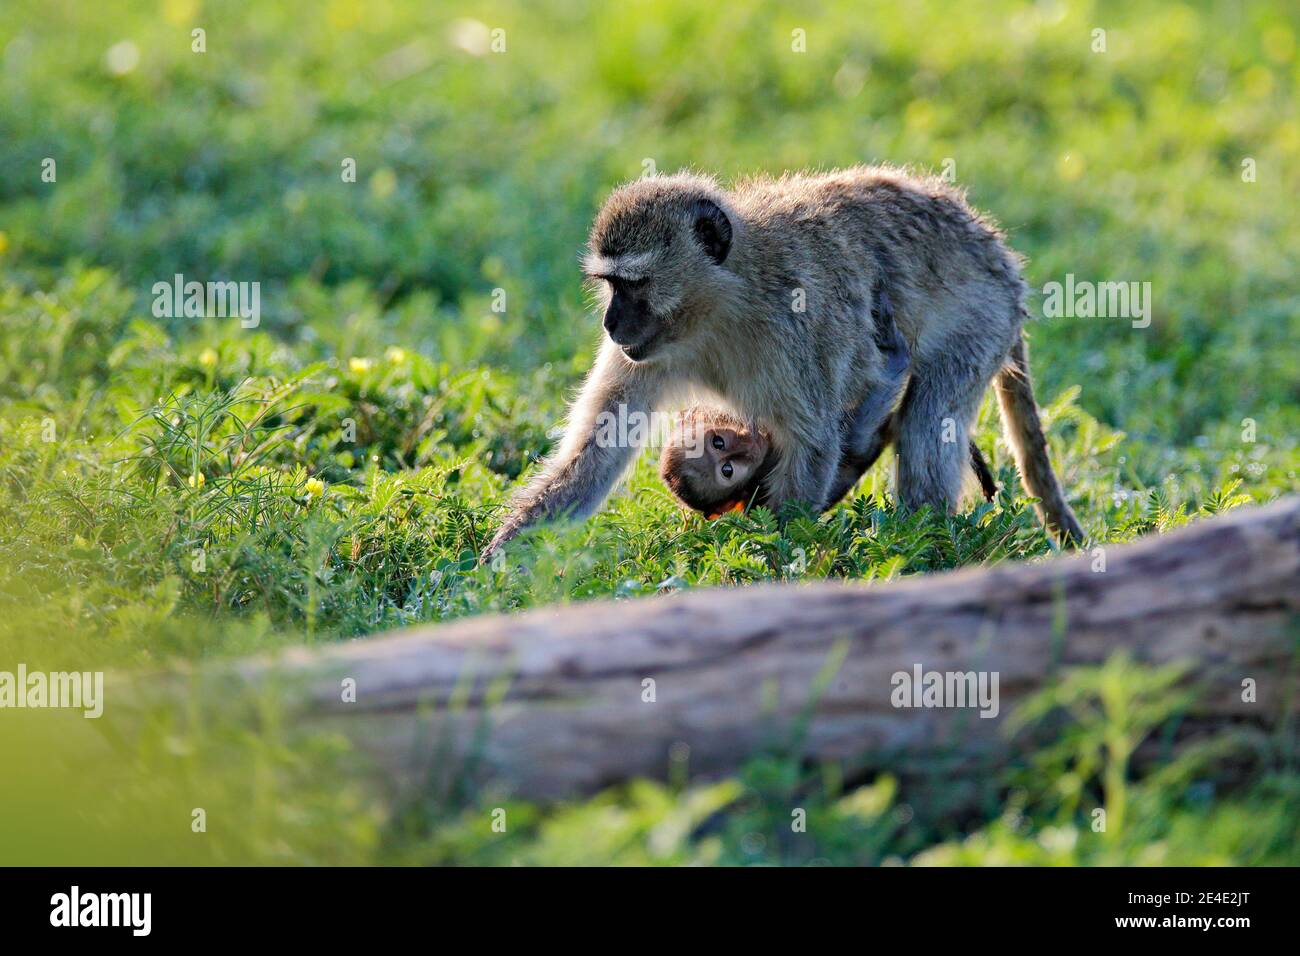 Affe - Mutter mit jungen Babe. Wildlife-Szene aus der Natur. Affe in grün. Vervet Affe, Chlorocebus pygerythrus, Porträt von grau und schwarz Gesicht Stockfoto